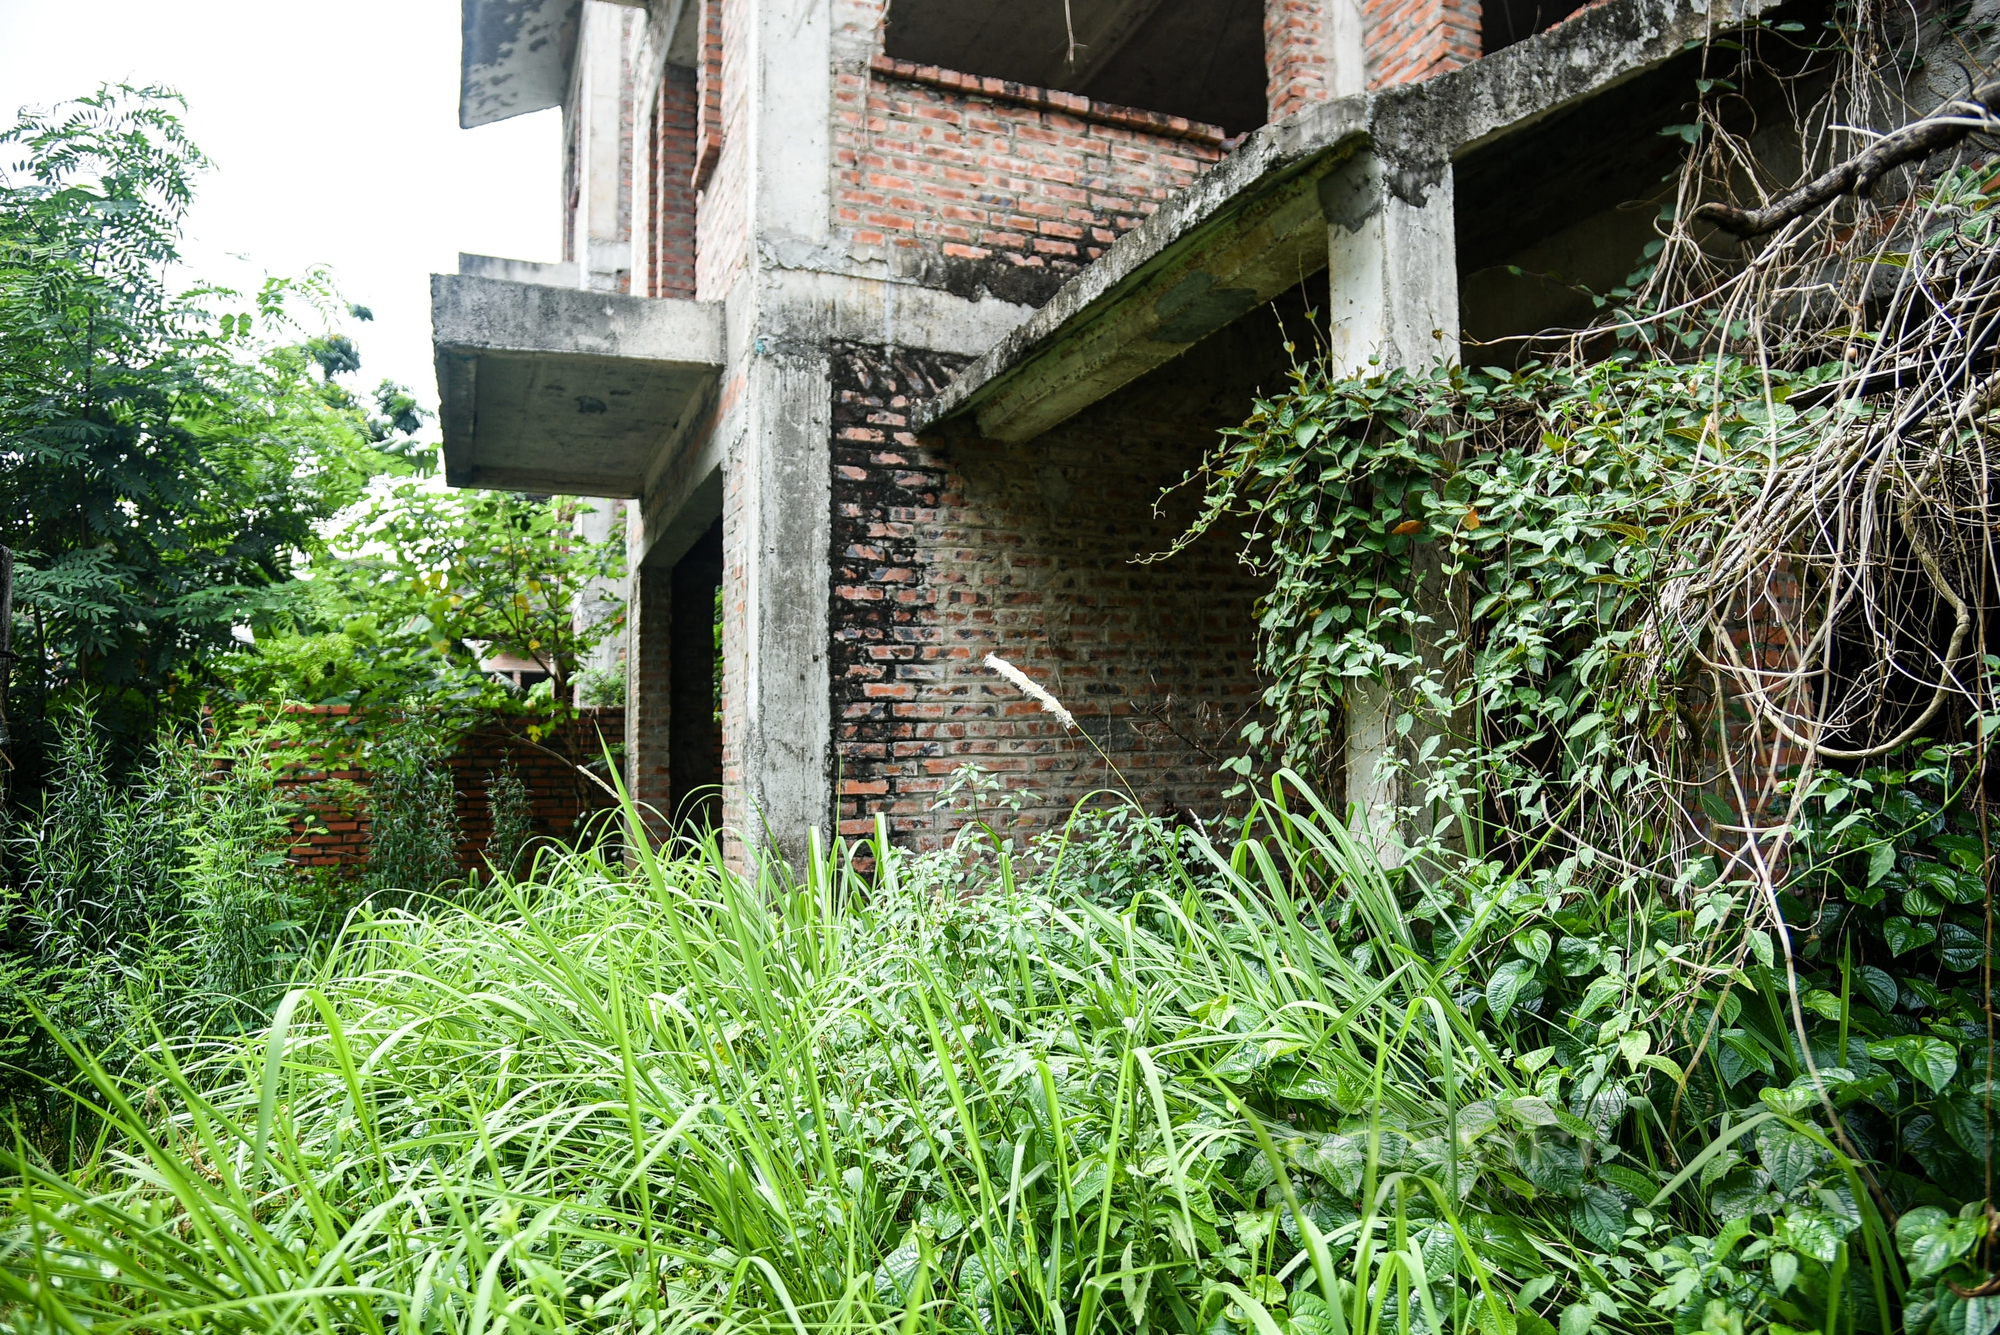 Cận cảnh biệt thự có giá hàng tỉ đồng “hóa rừng” trong khu đô thị Xuân Phương mà Hà Nội vừa yêu cầu rà soát - Ảnh 7.